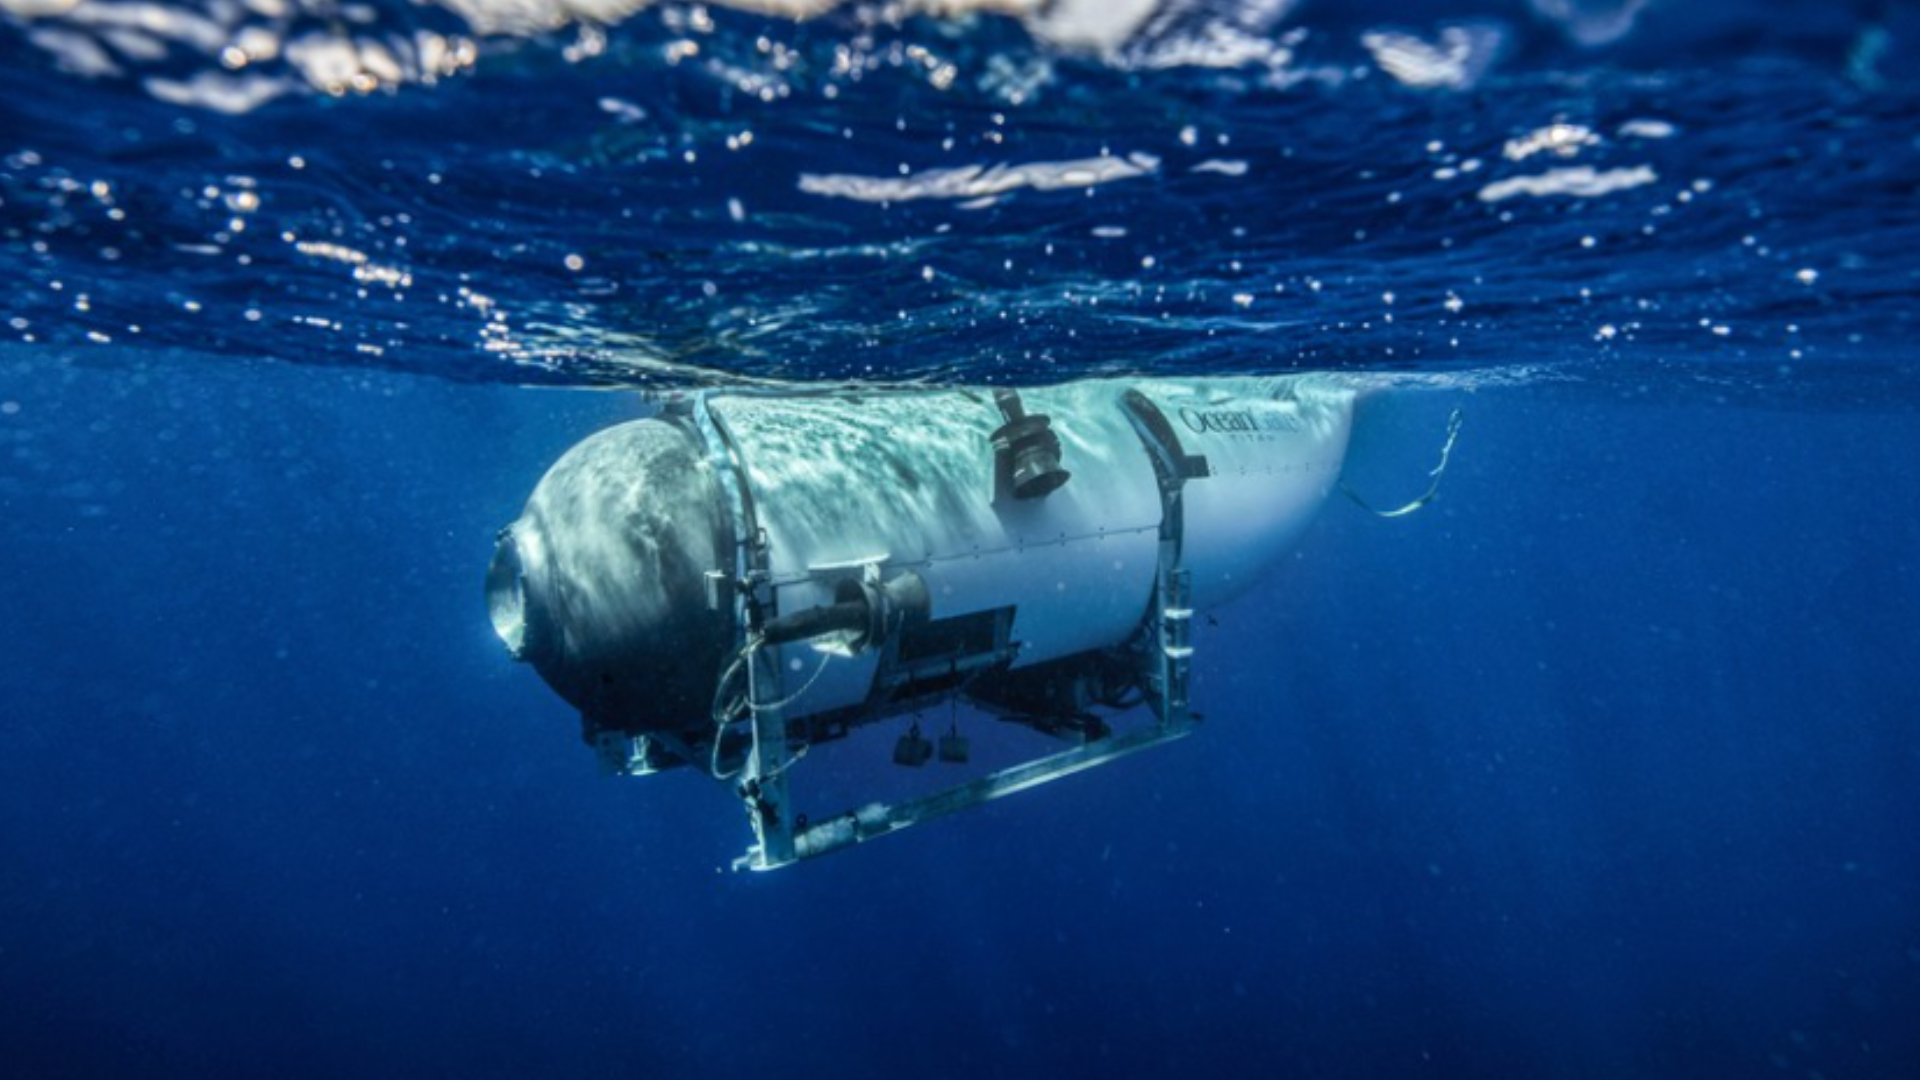 Destroços de submarino são recolhidos, e autoridades revelam descoberta sobre passageiros